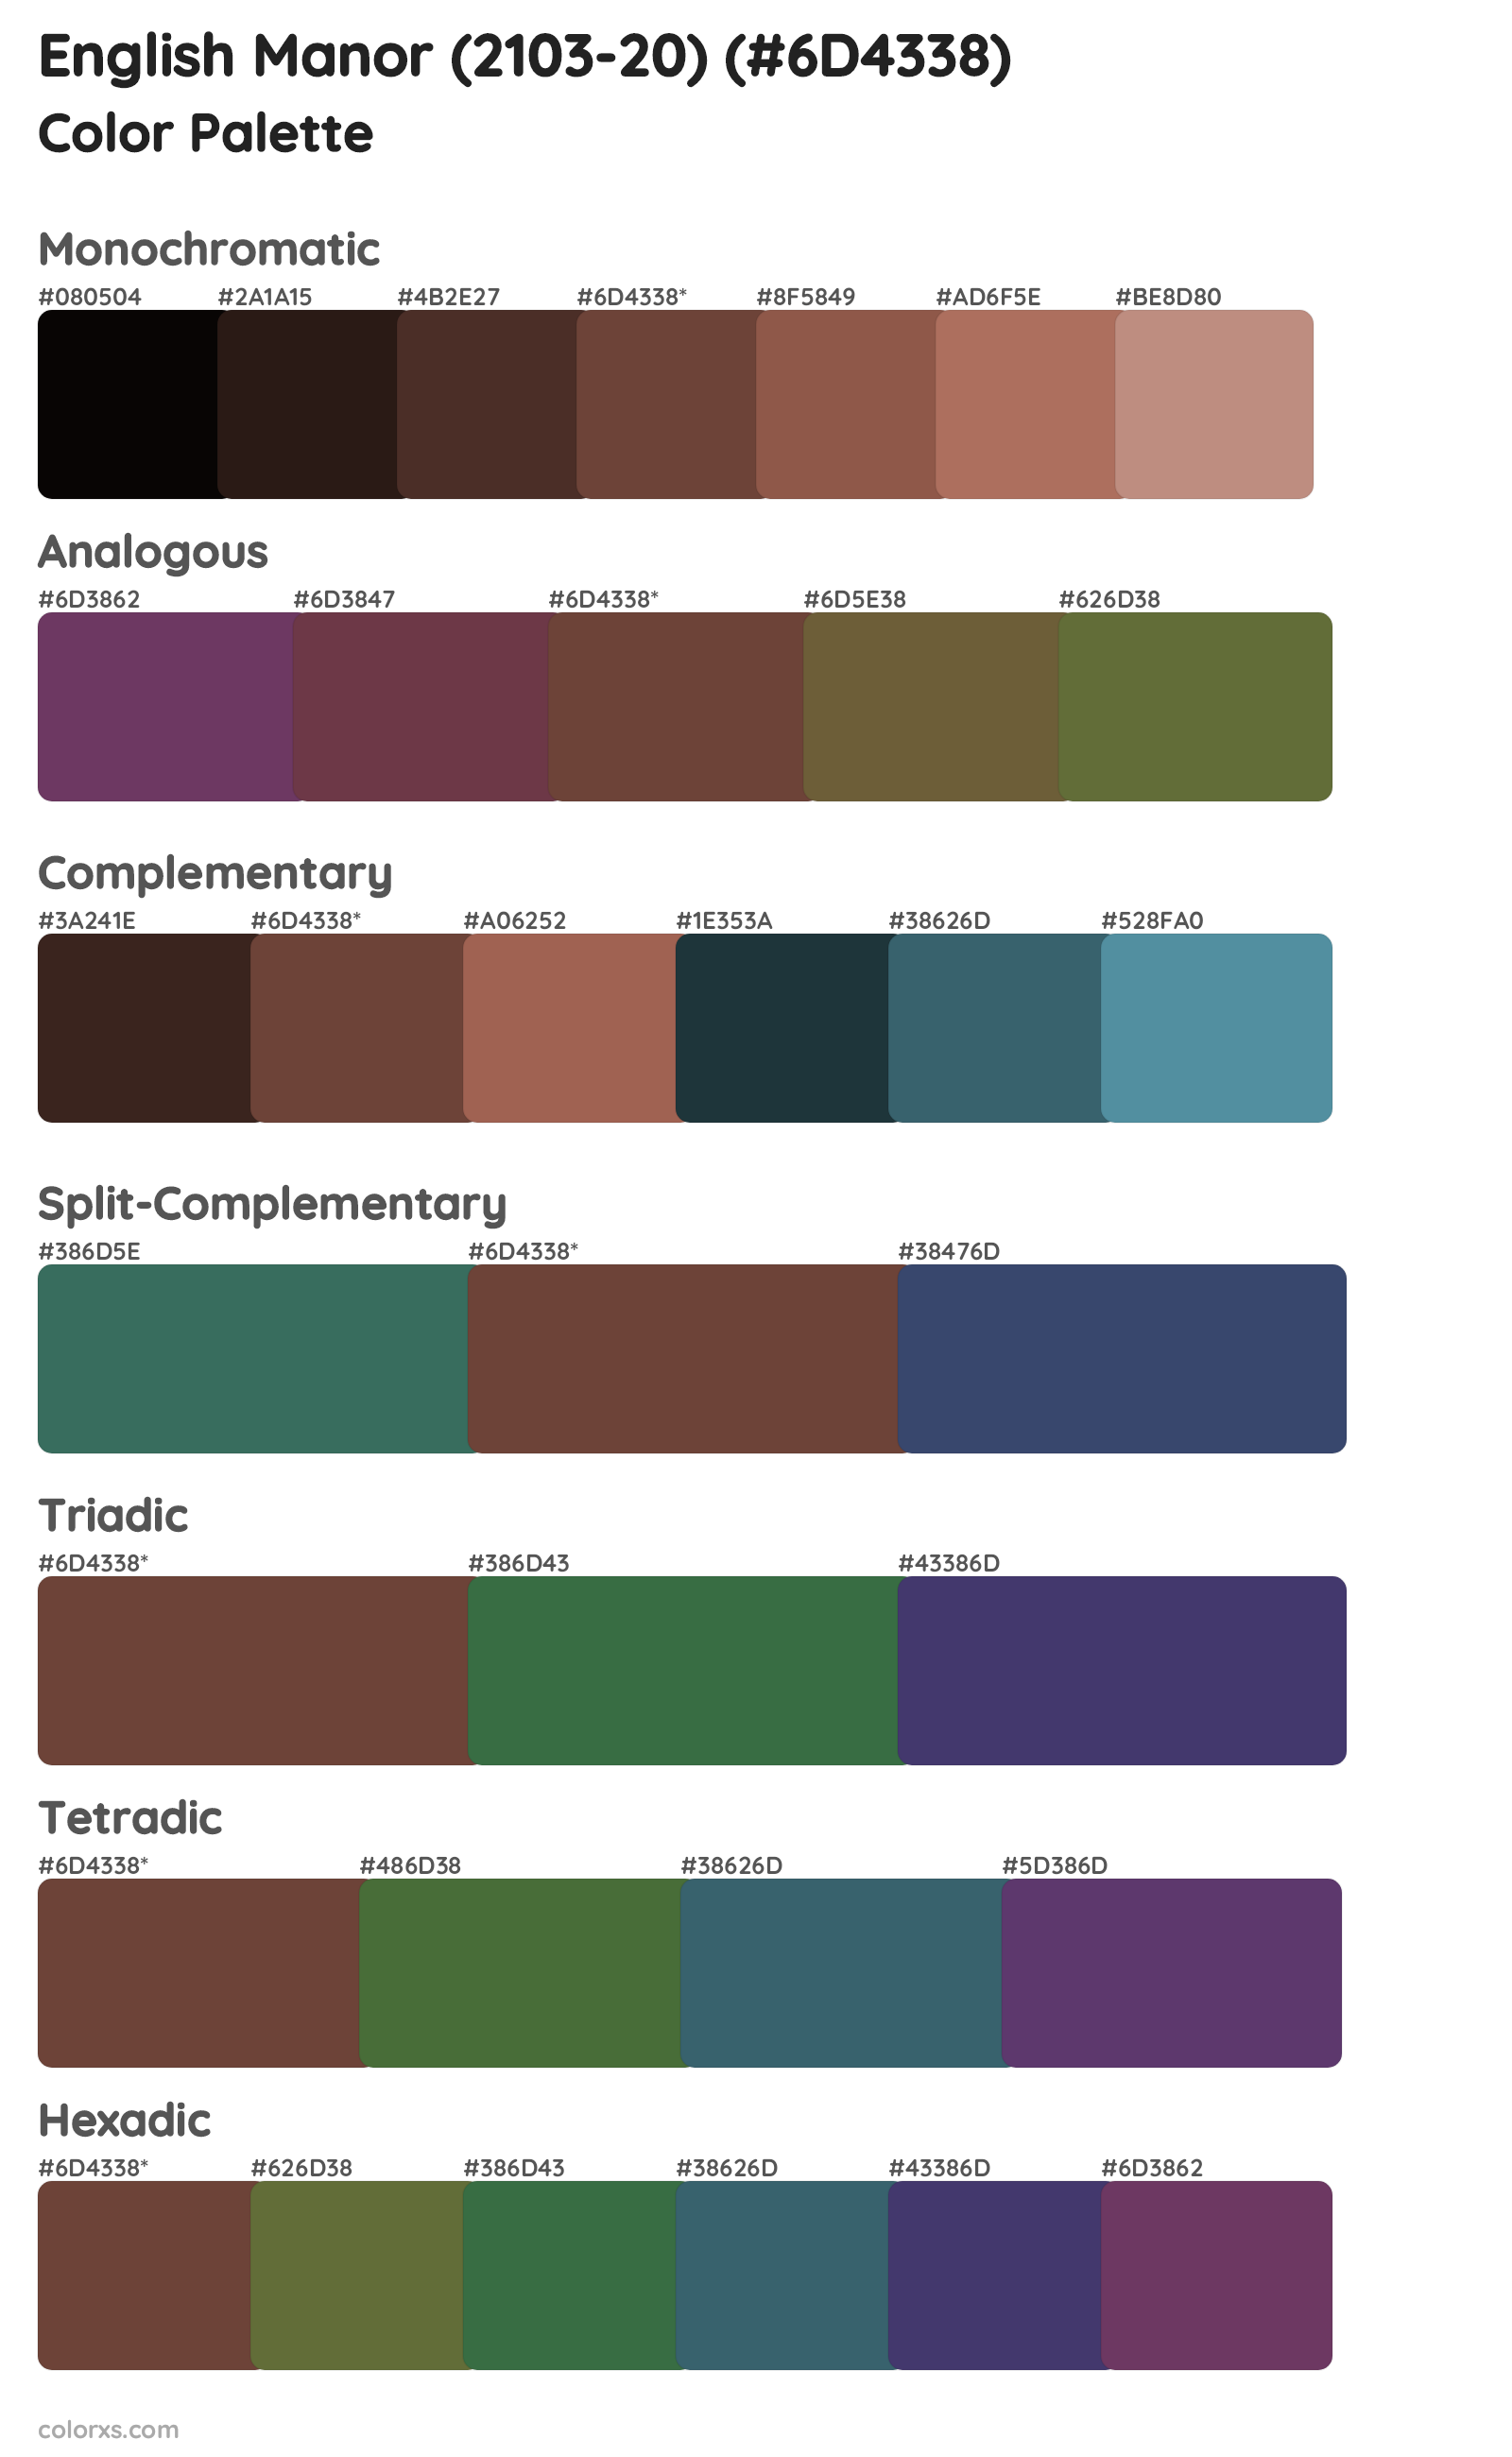 English Manor (2103-20) Color Scheme Palettes